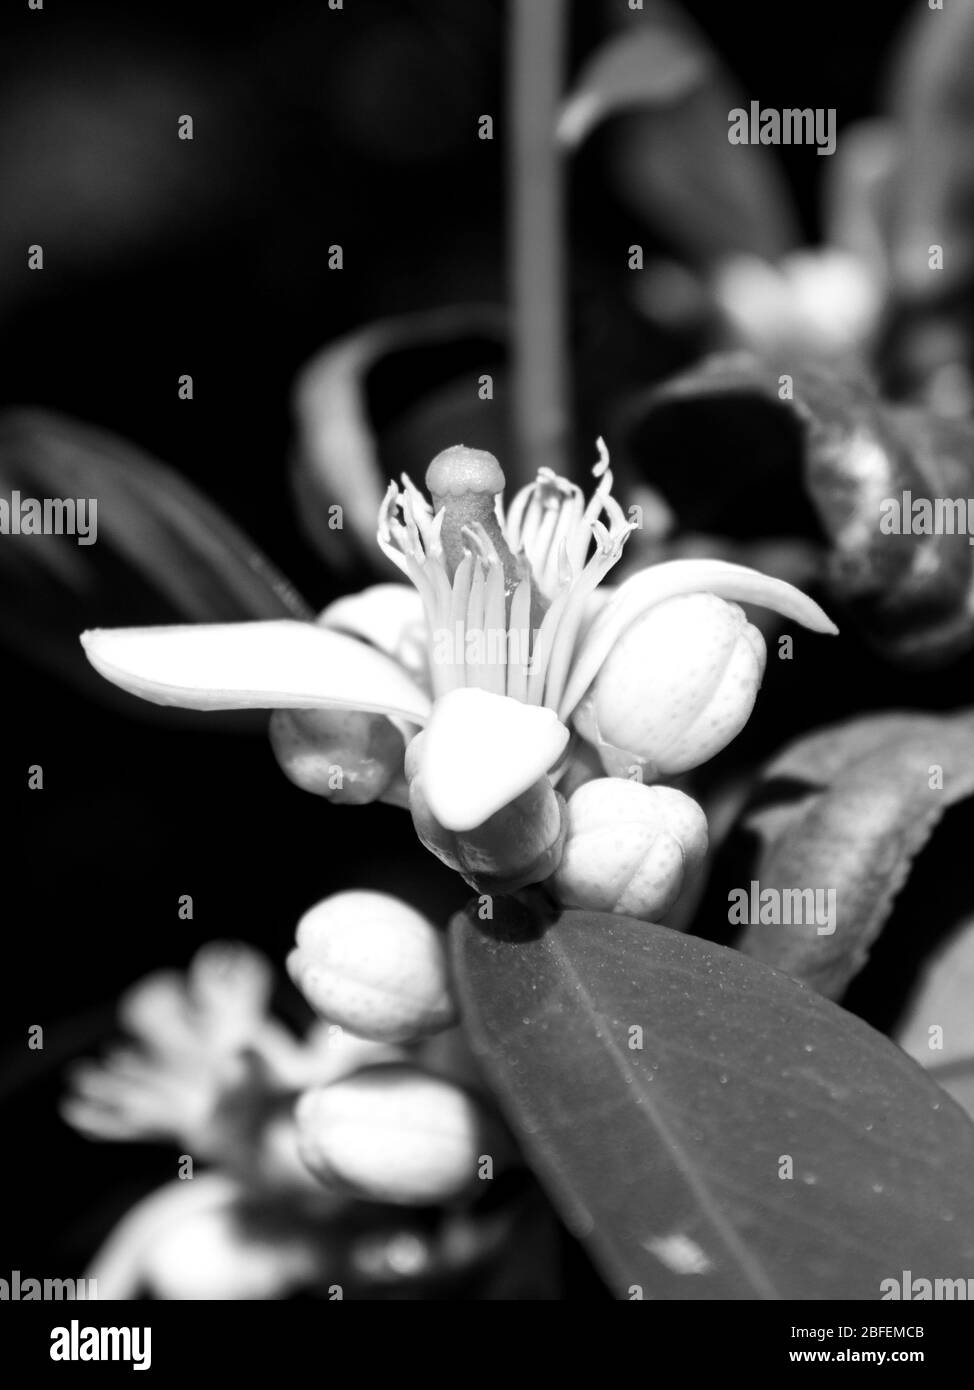 Gros plan d'une fleur de chaux blanche et délicate en monochrome entourée de boutons de fleurs Banque D'Images